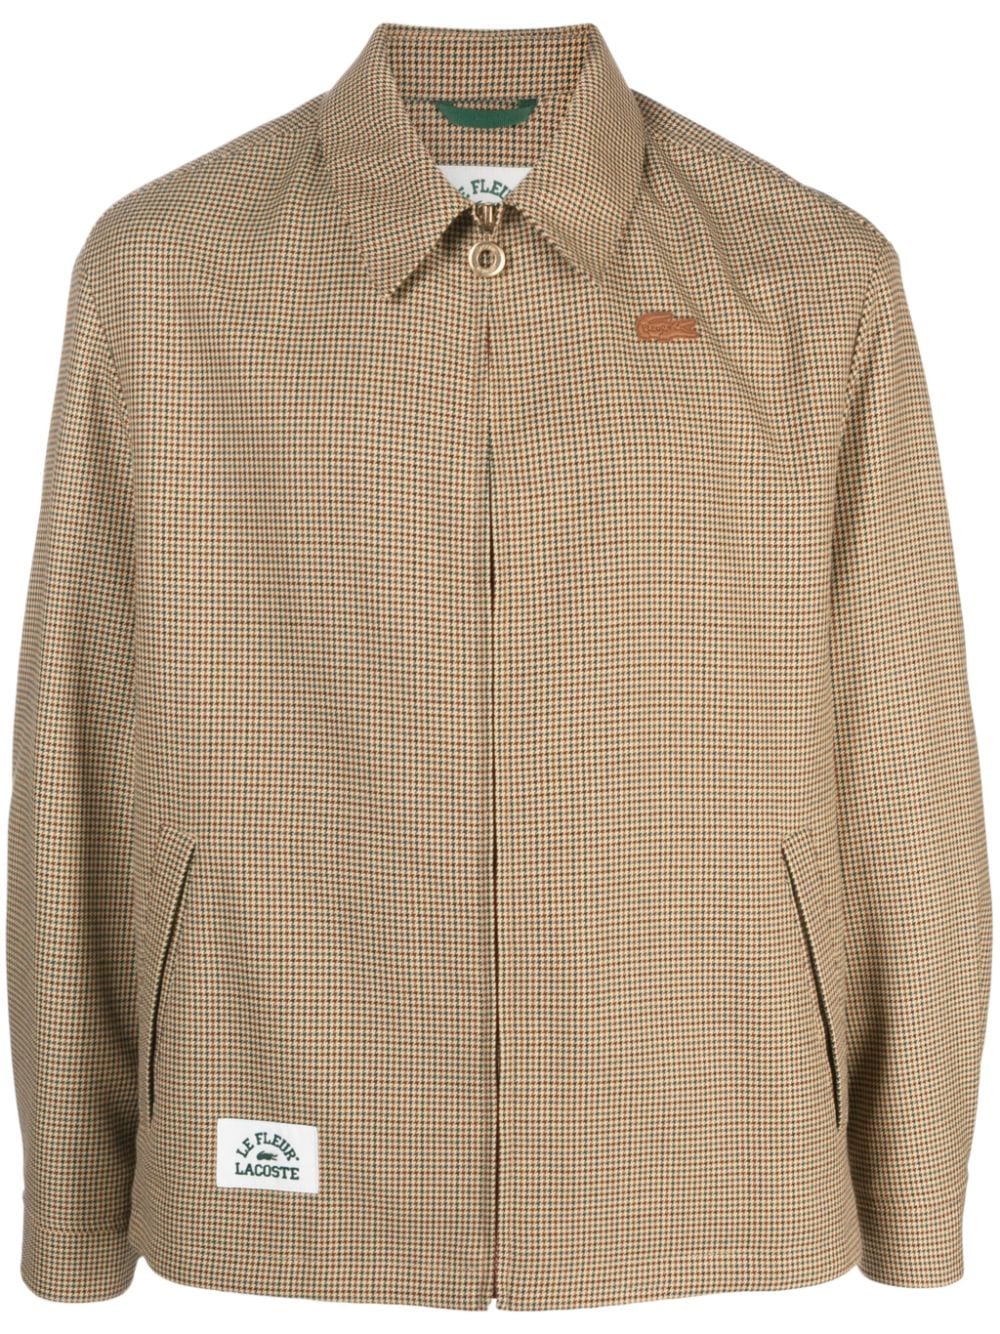 Lacoste x Le FLEUR check-pattern Jacket - Farfetch